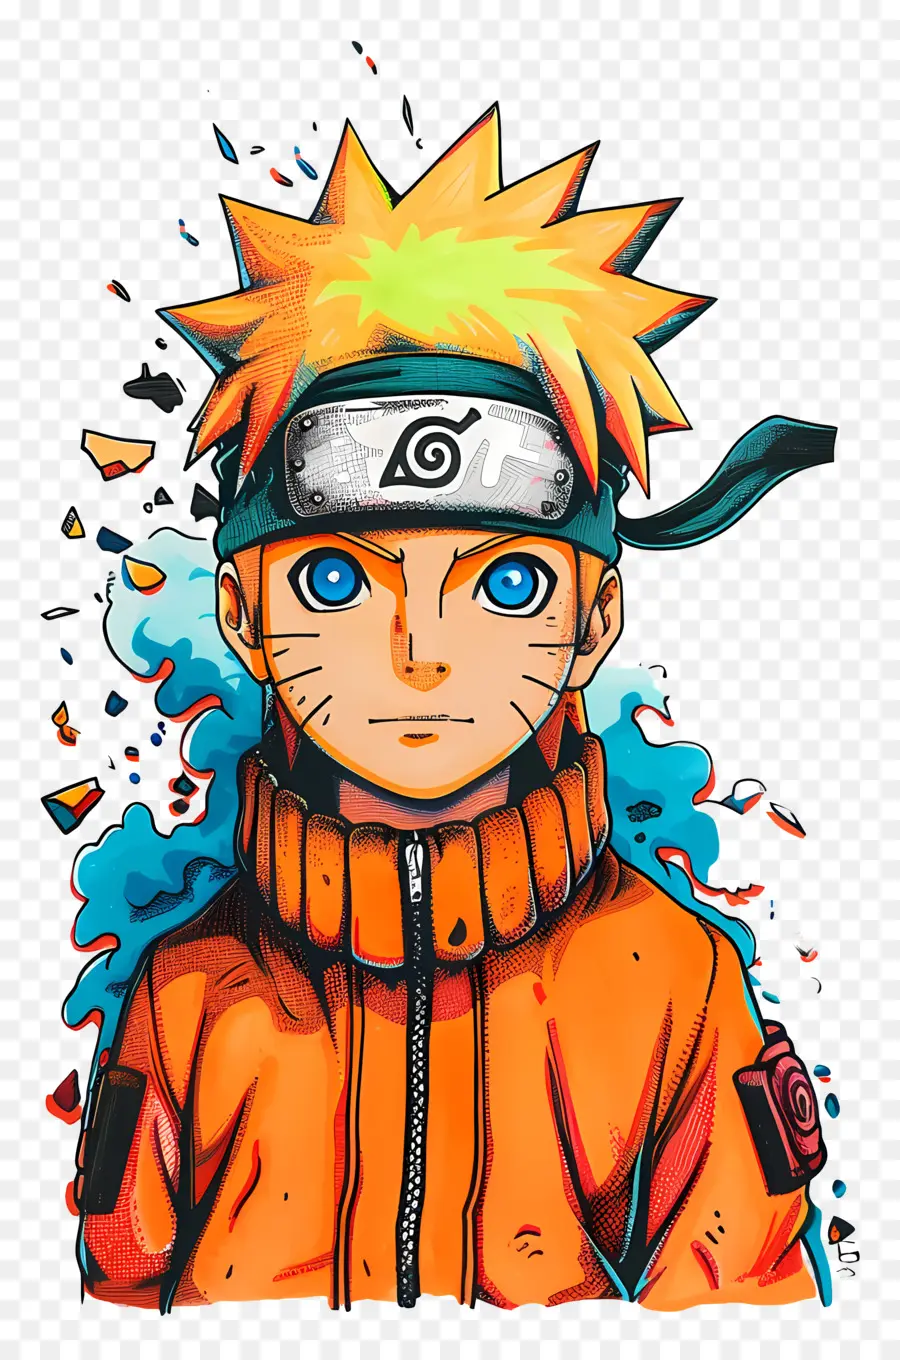 Naruto - Selbstbewusstes Mann mit blauem Haar im Porträt